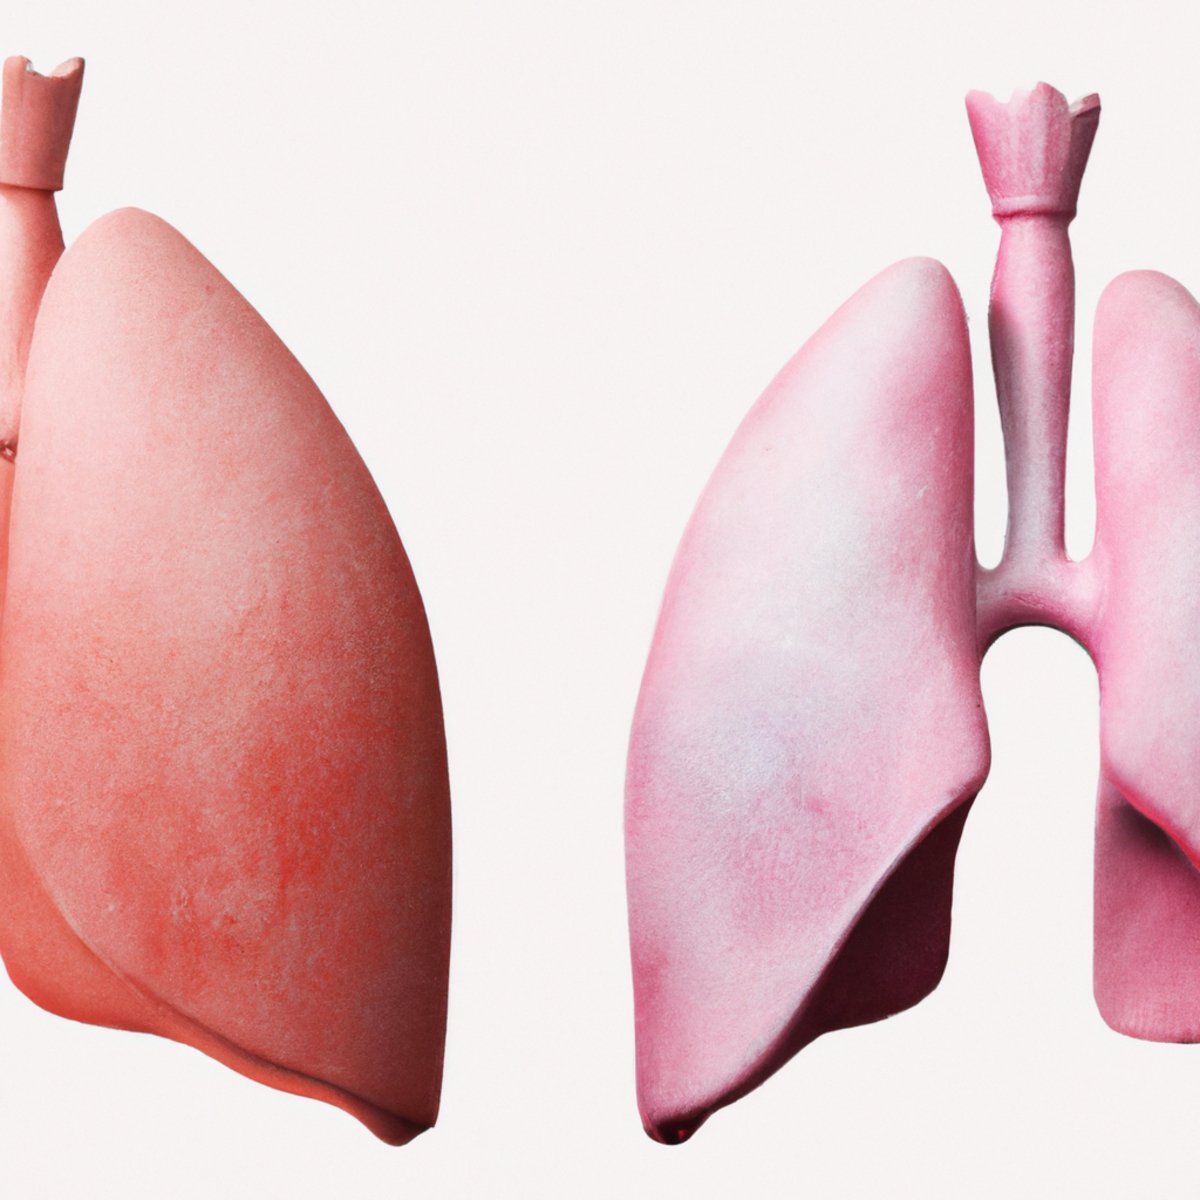 Rare Lung Conditions: Desquamative Interstitial Pneumonia (DIP)